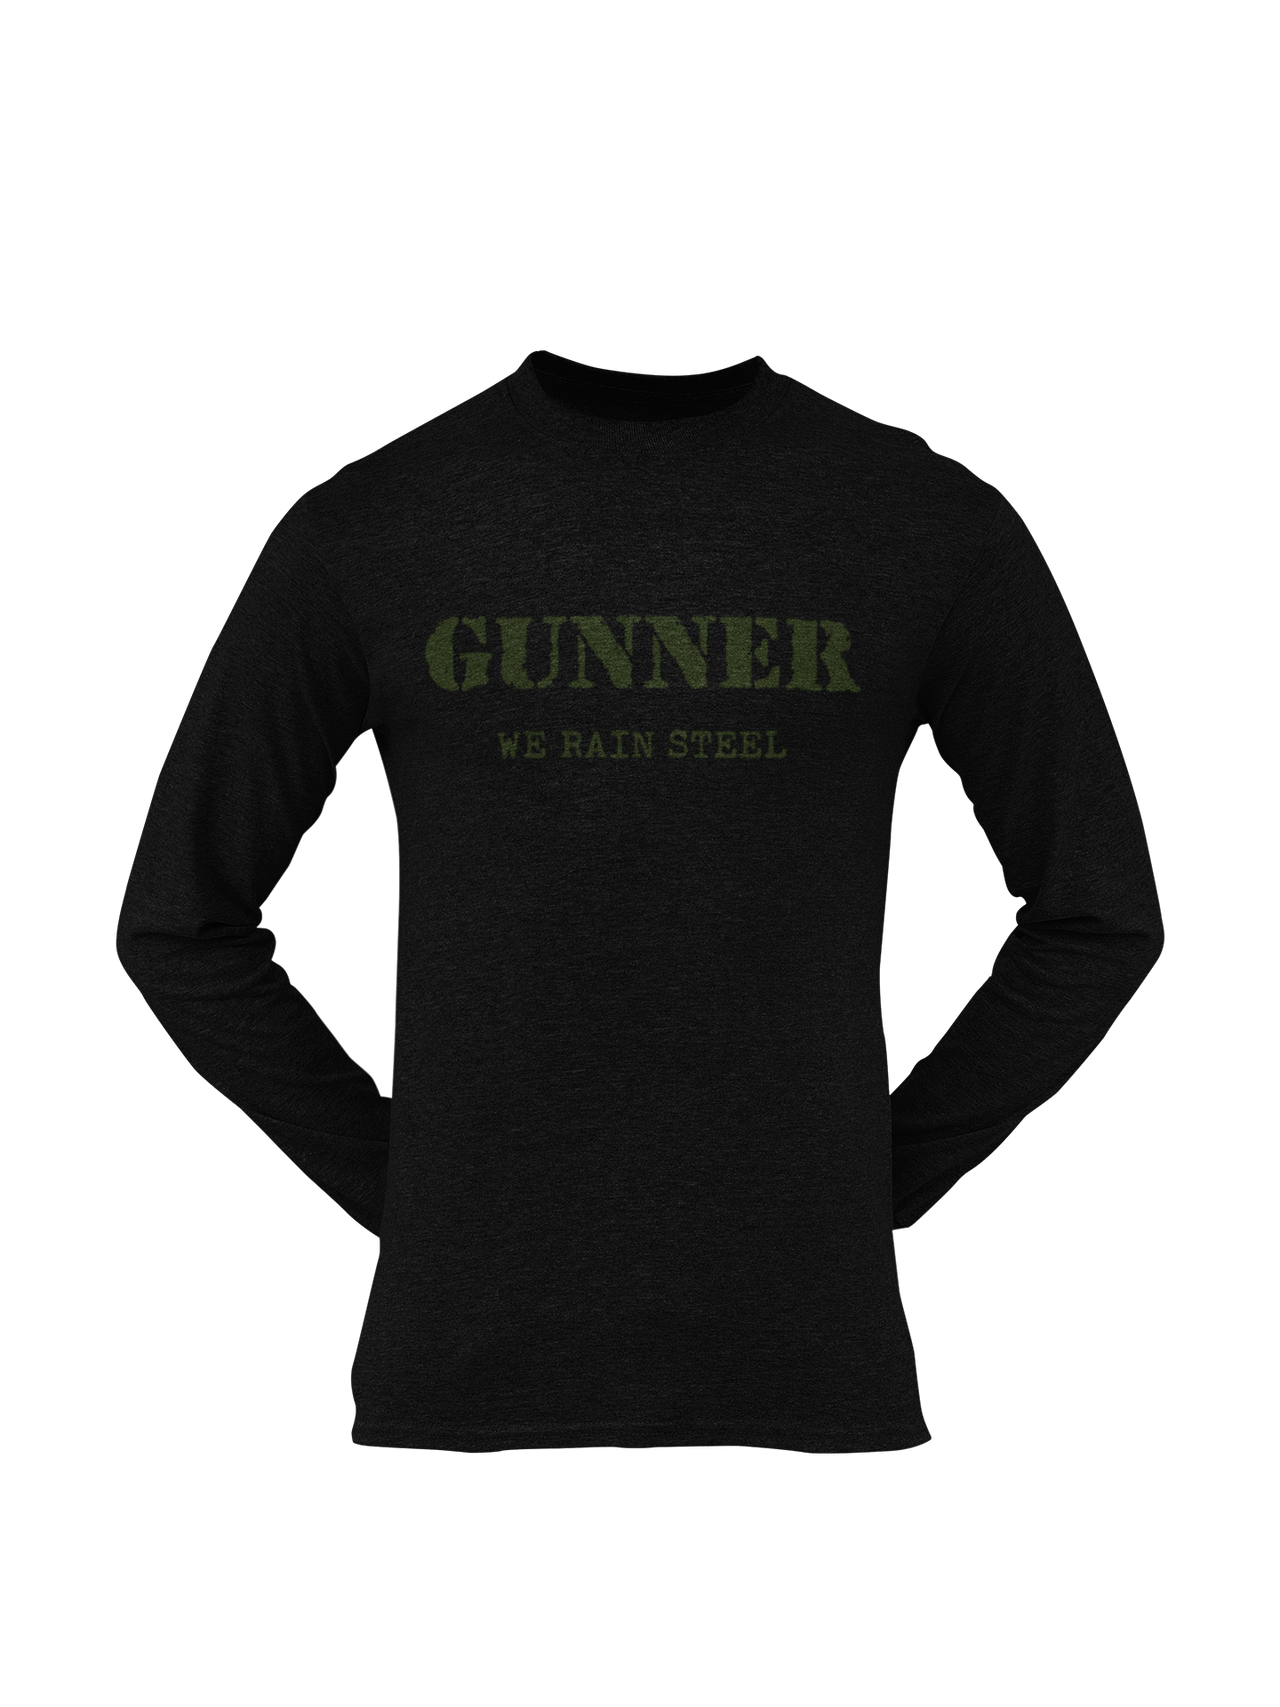 Gunner T-shirt - We Rain Steel (Men)